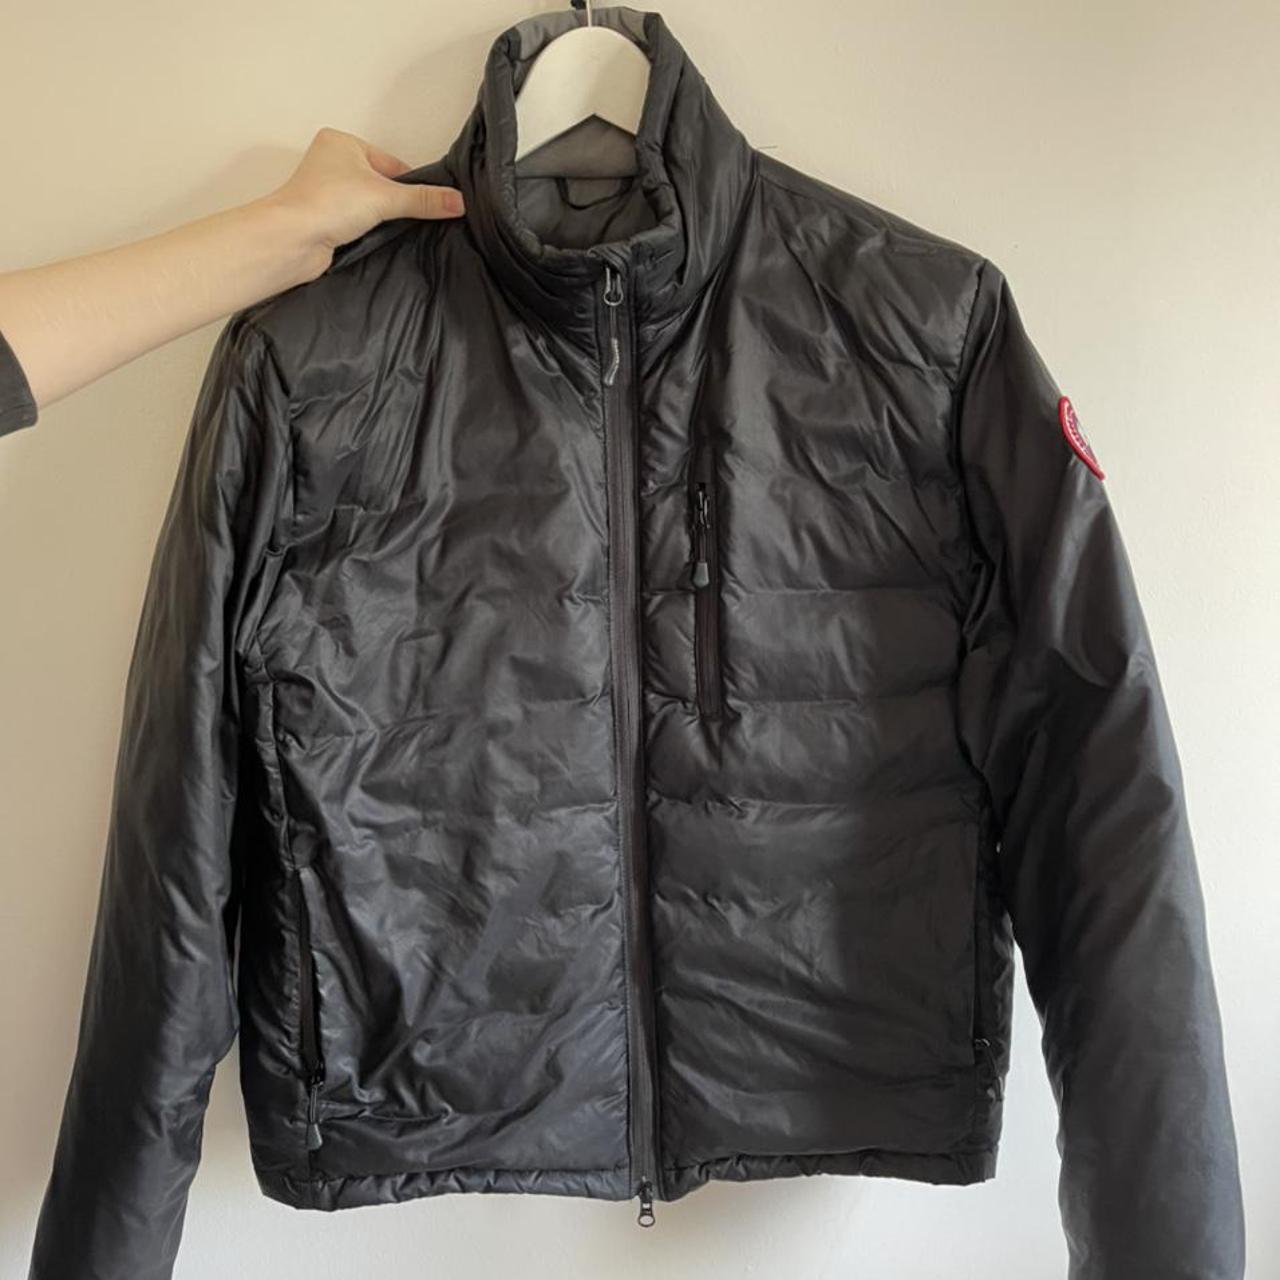 Product Image 1 - Canada Goose Lodge Jacket

Size Medium